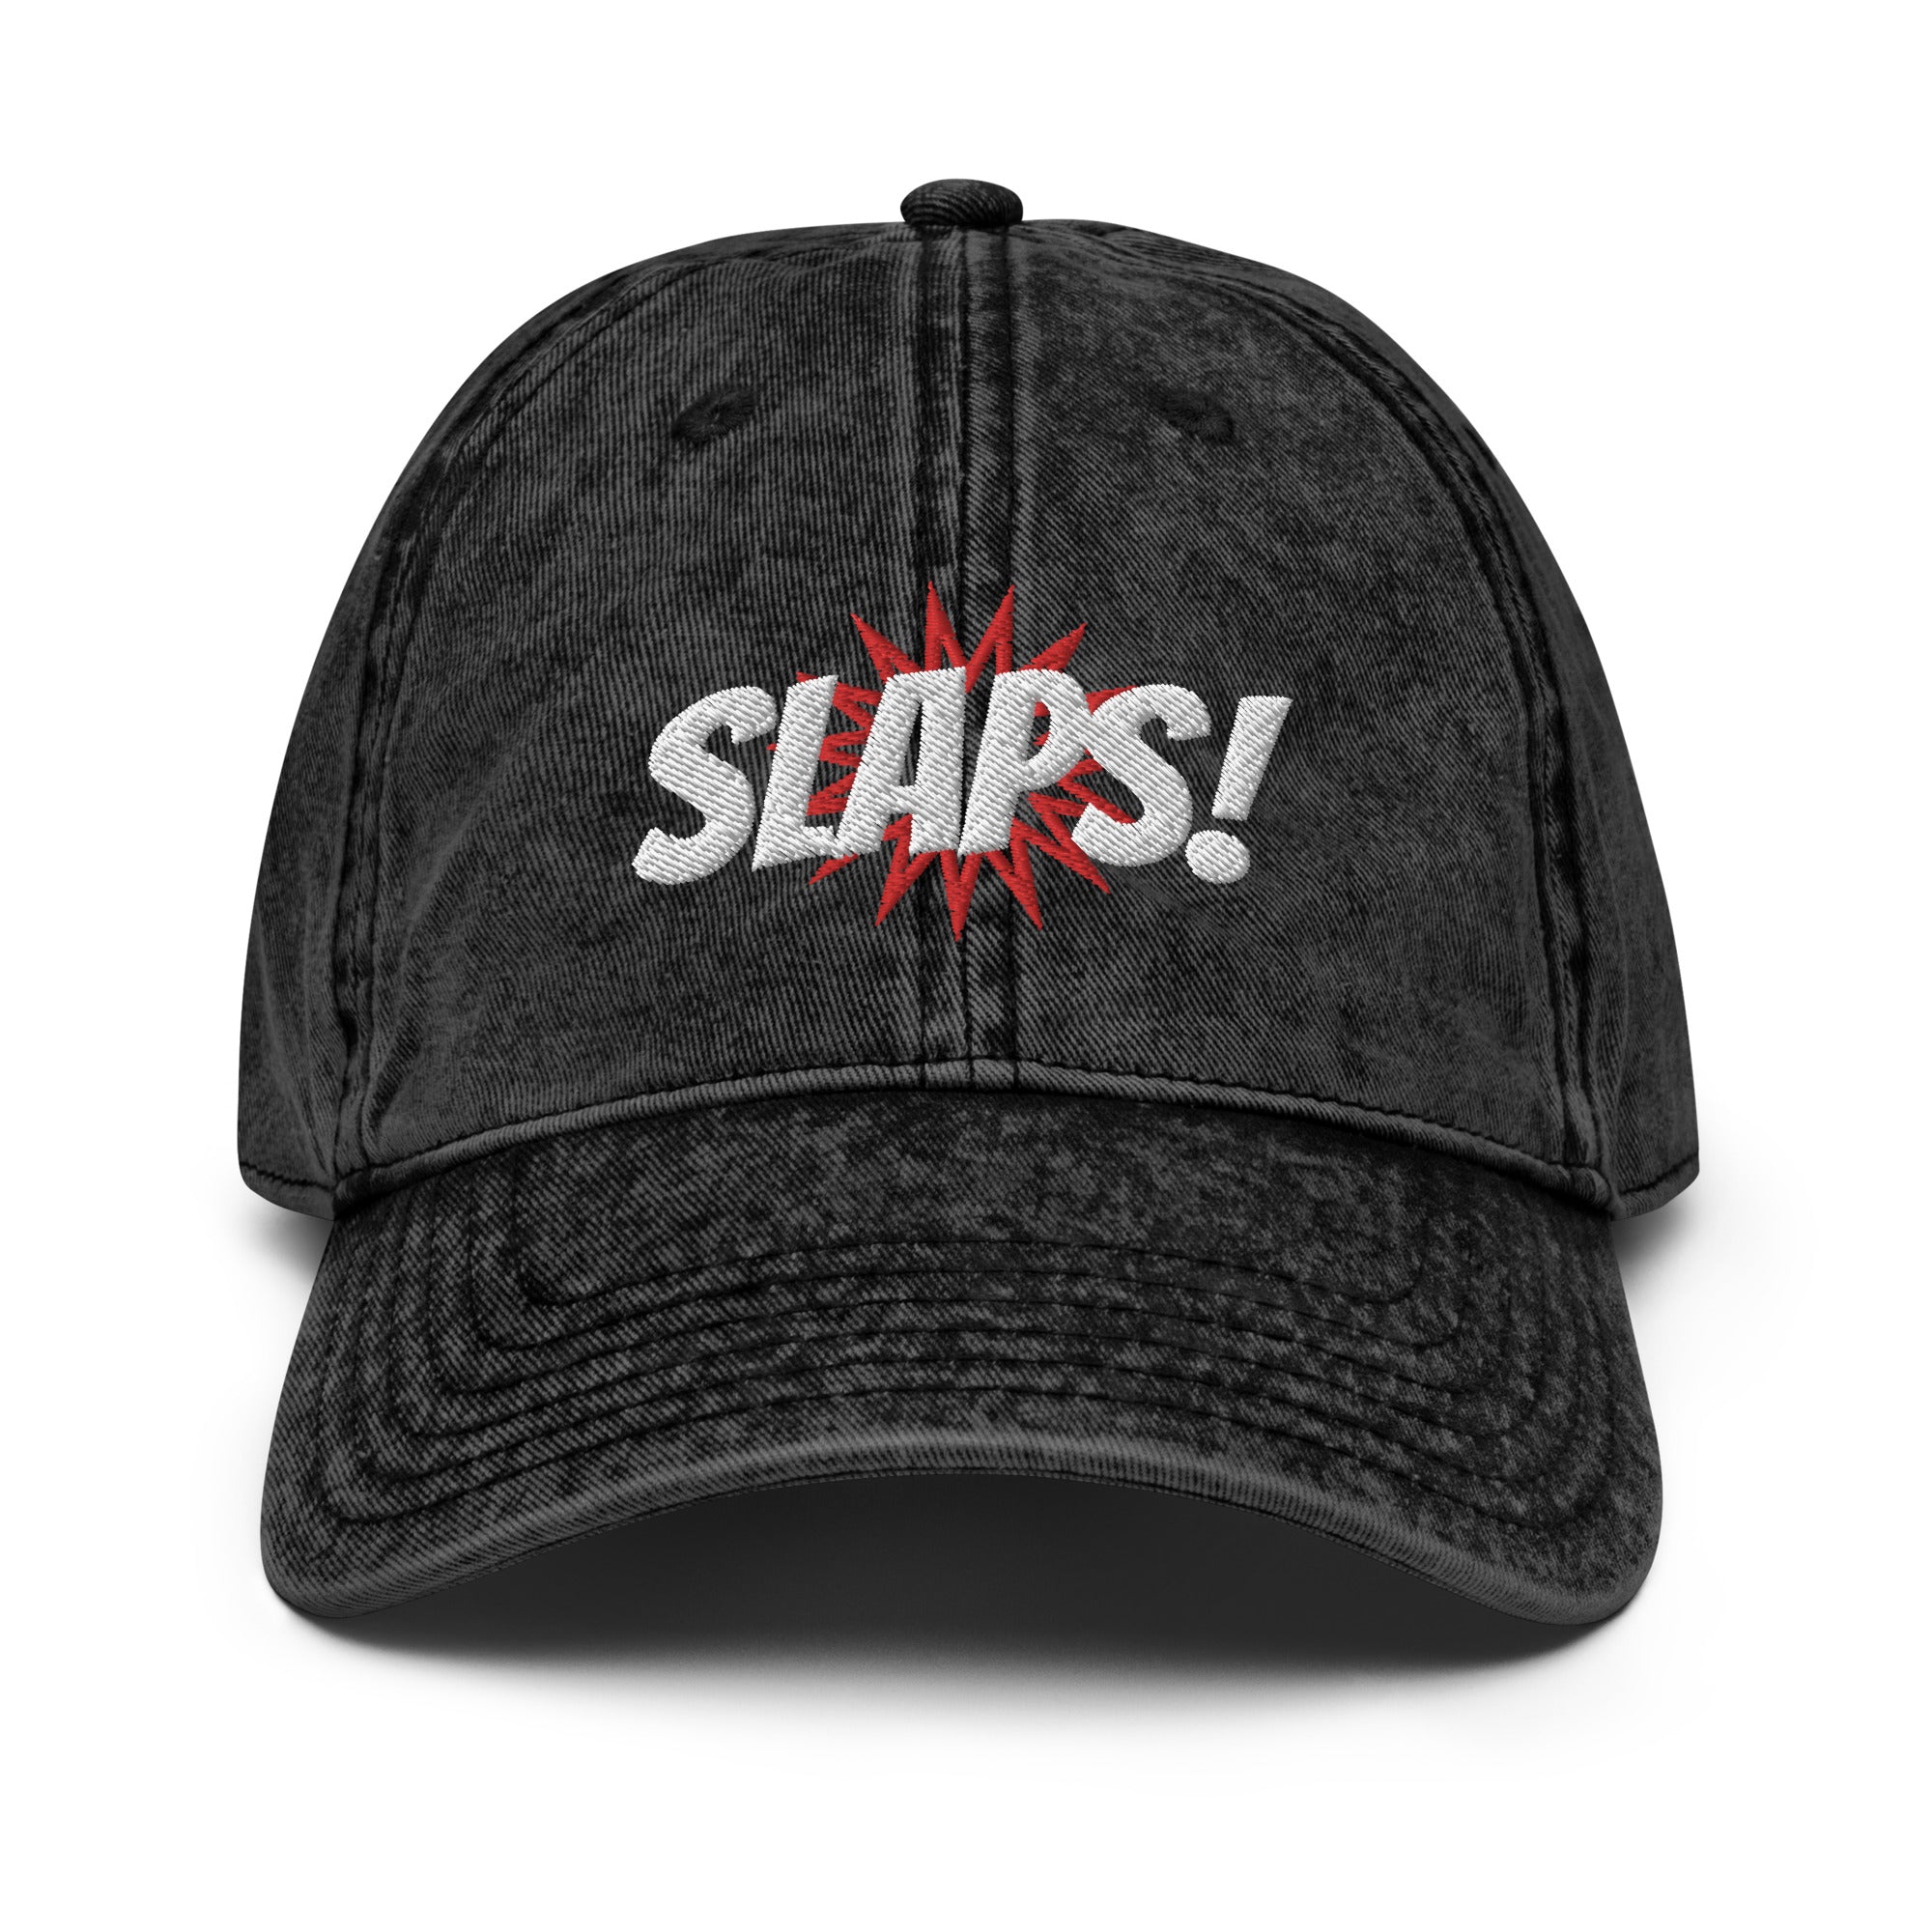 "Slaps" Vintage Twill Dad Hat - San Francisco Slang